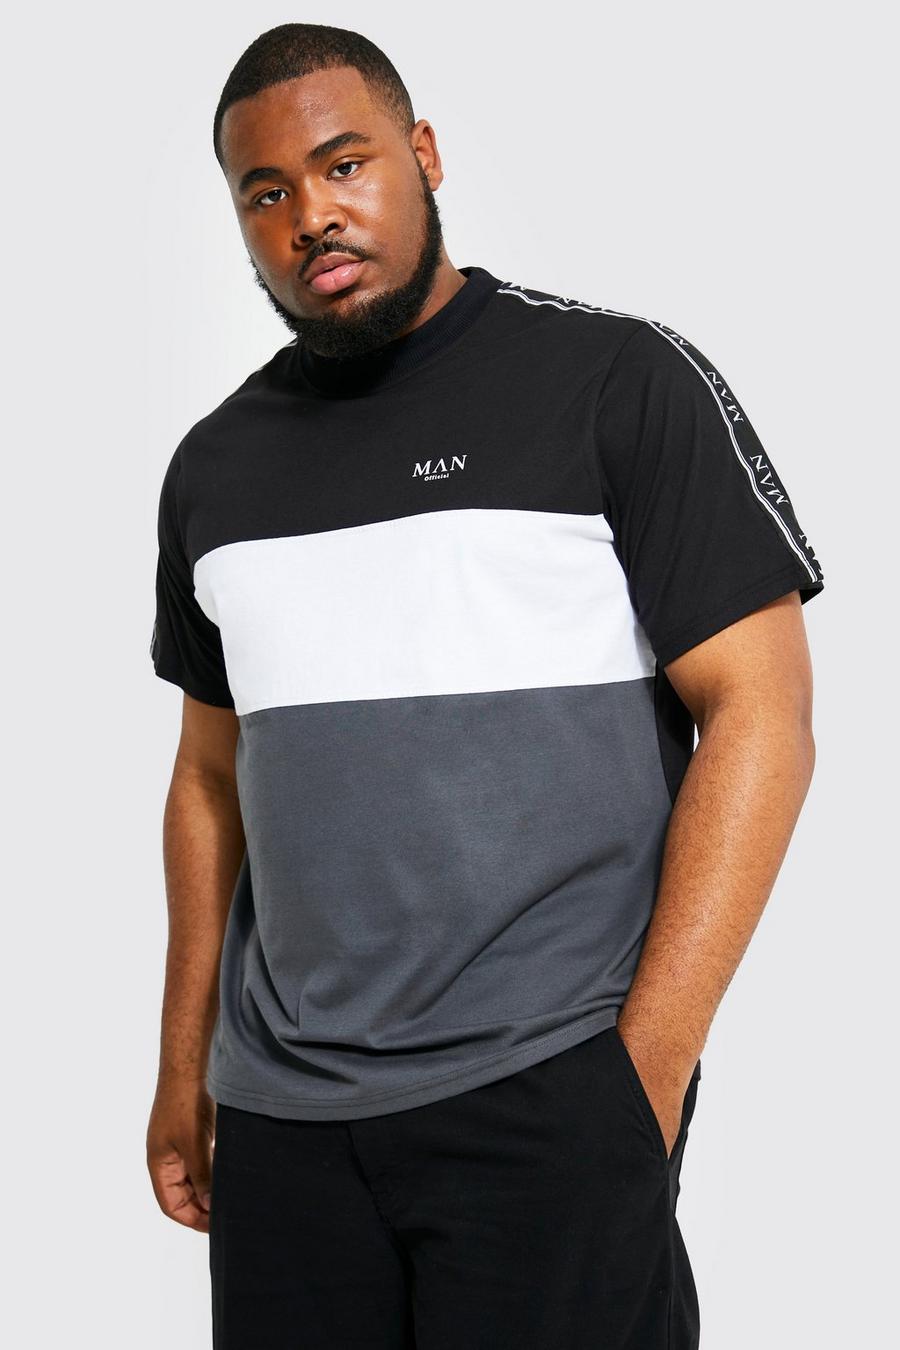 Camiseta Plus con colores en bloque, cinta y letras MAN romanas, Black nero